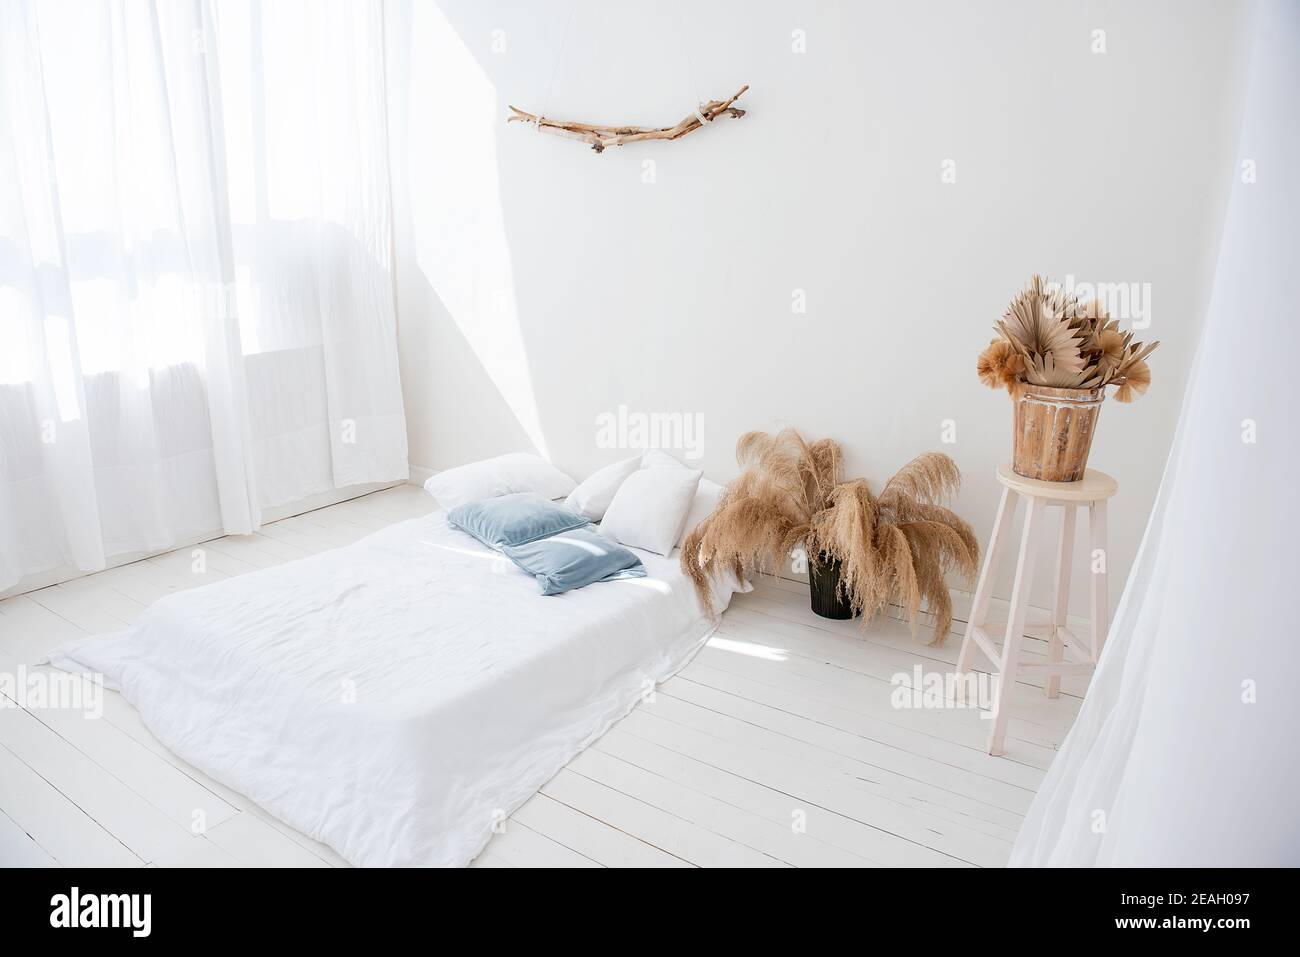 Loft blanco minimalista en estilo interior escandinavo. Hay una cama en el suelo de madera, los tulipanes ventilados y claros en las ventanas, hay pampas hierba en jarrones Foto de stock